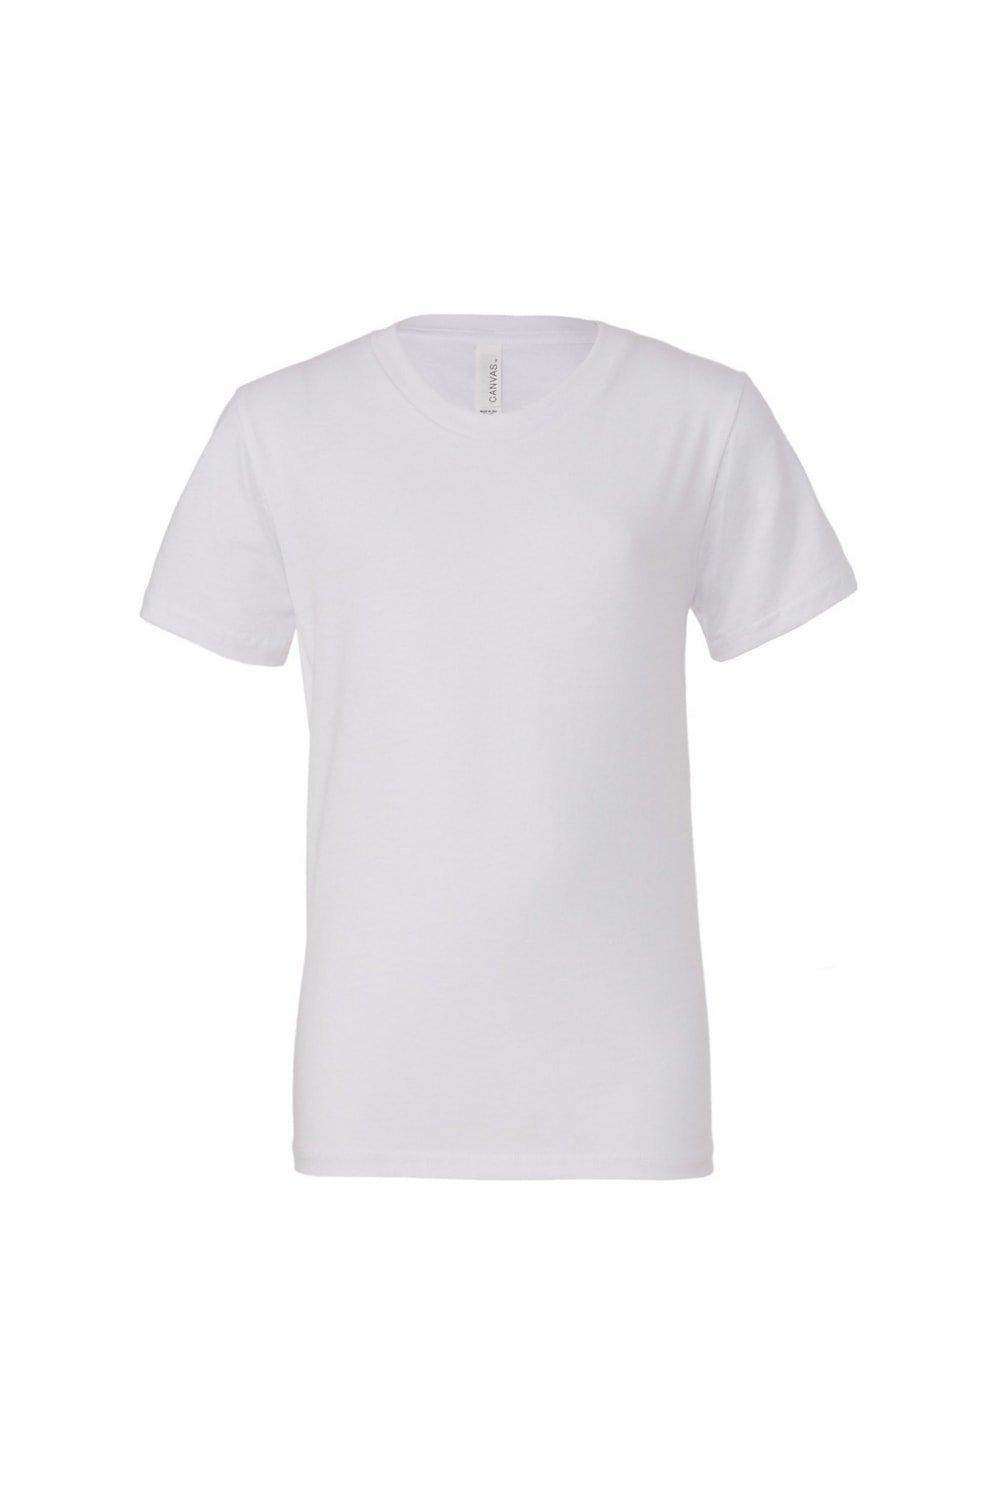 Молодежная футболка из джерси с короткими рукавами Bella + Canvas, белый сигел рик розничная торговля для чайников